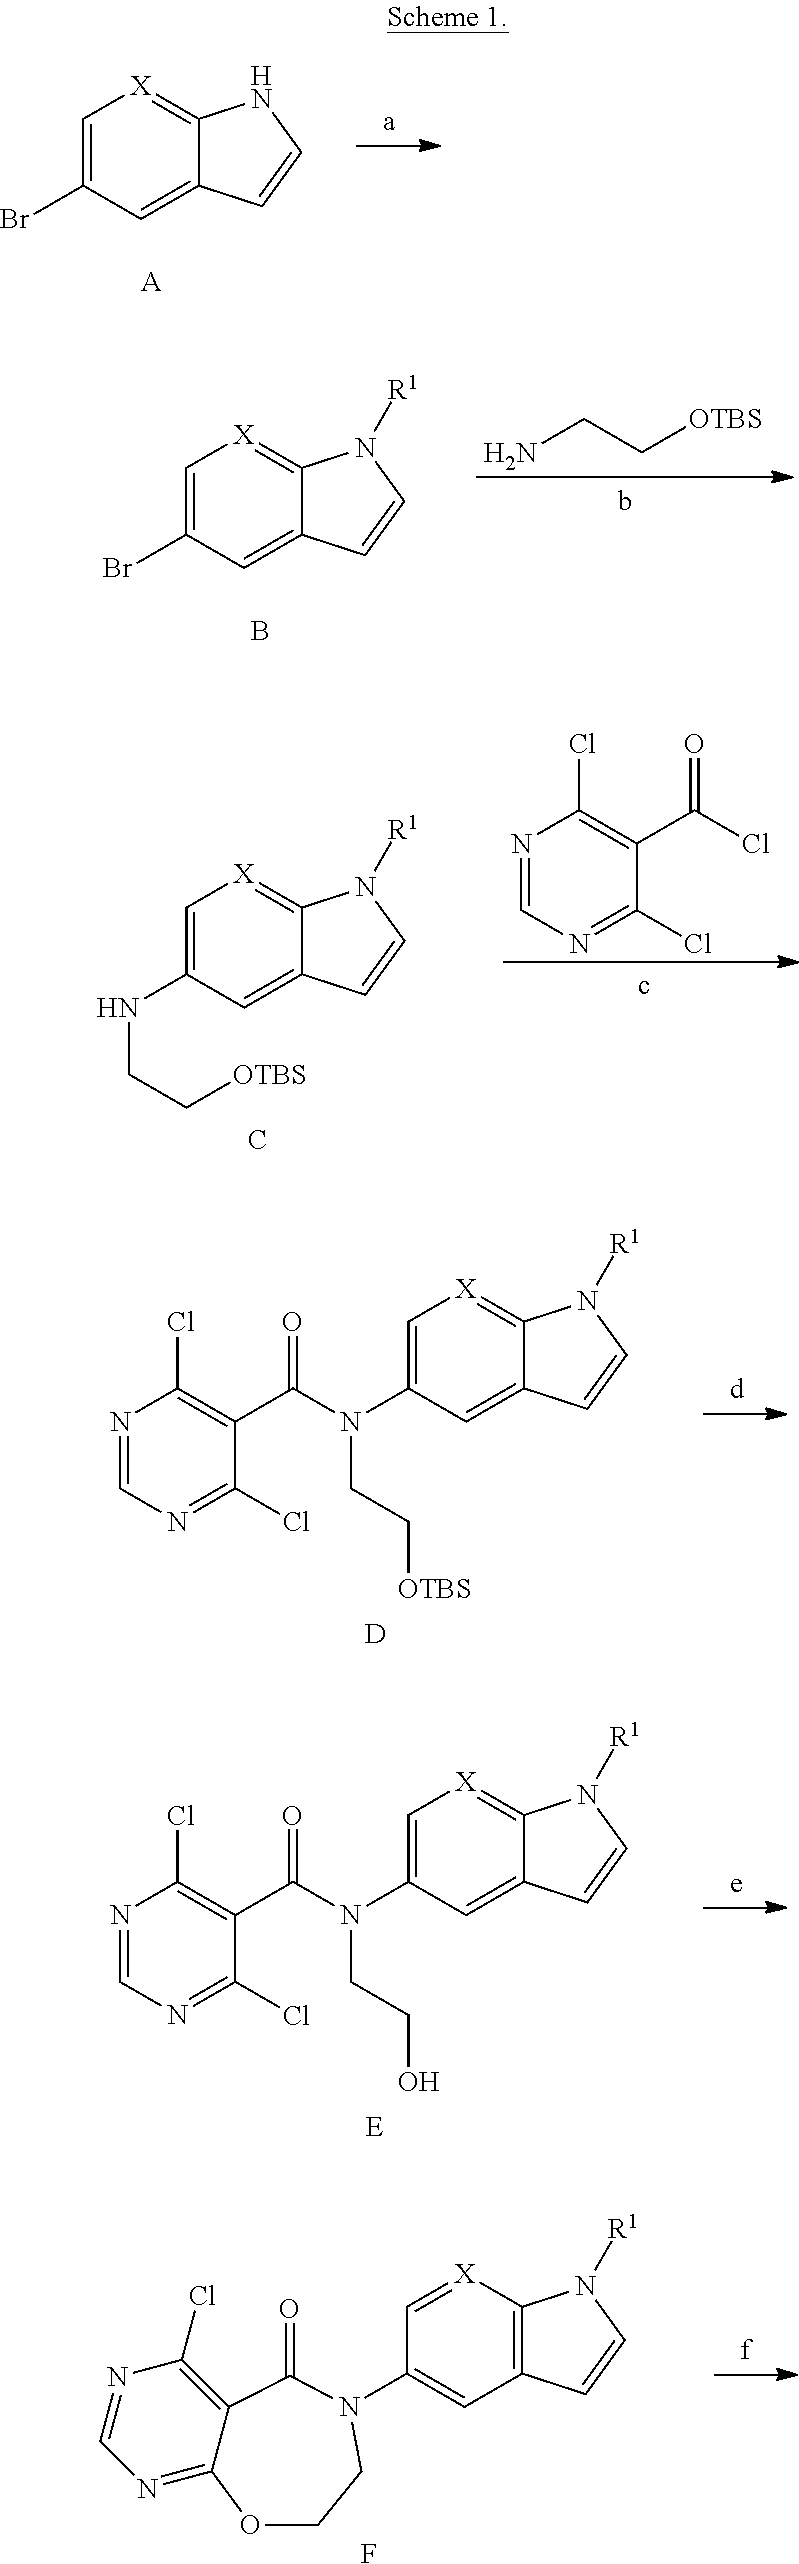 Novel compounds as diacylglycerol acyltransferase inhibitors